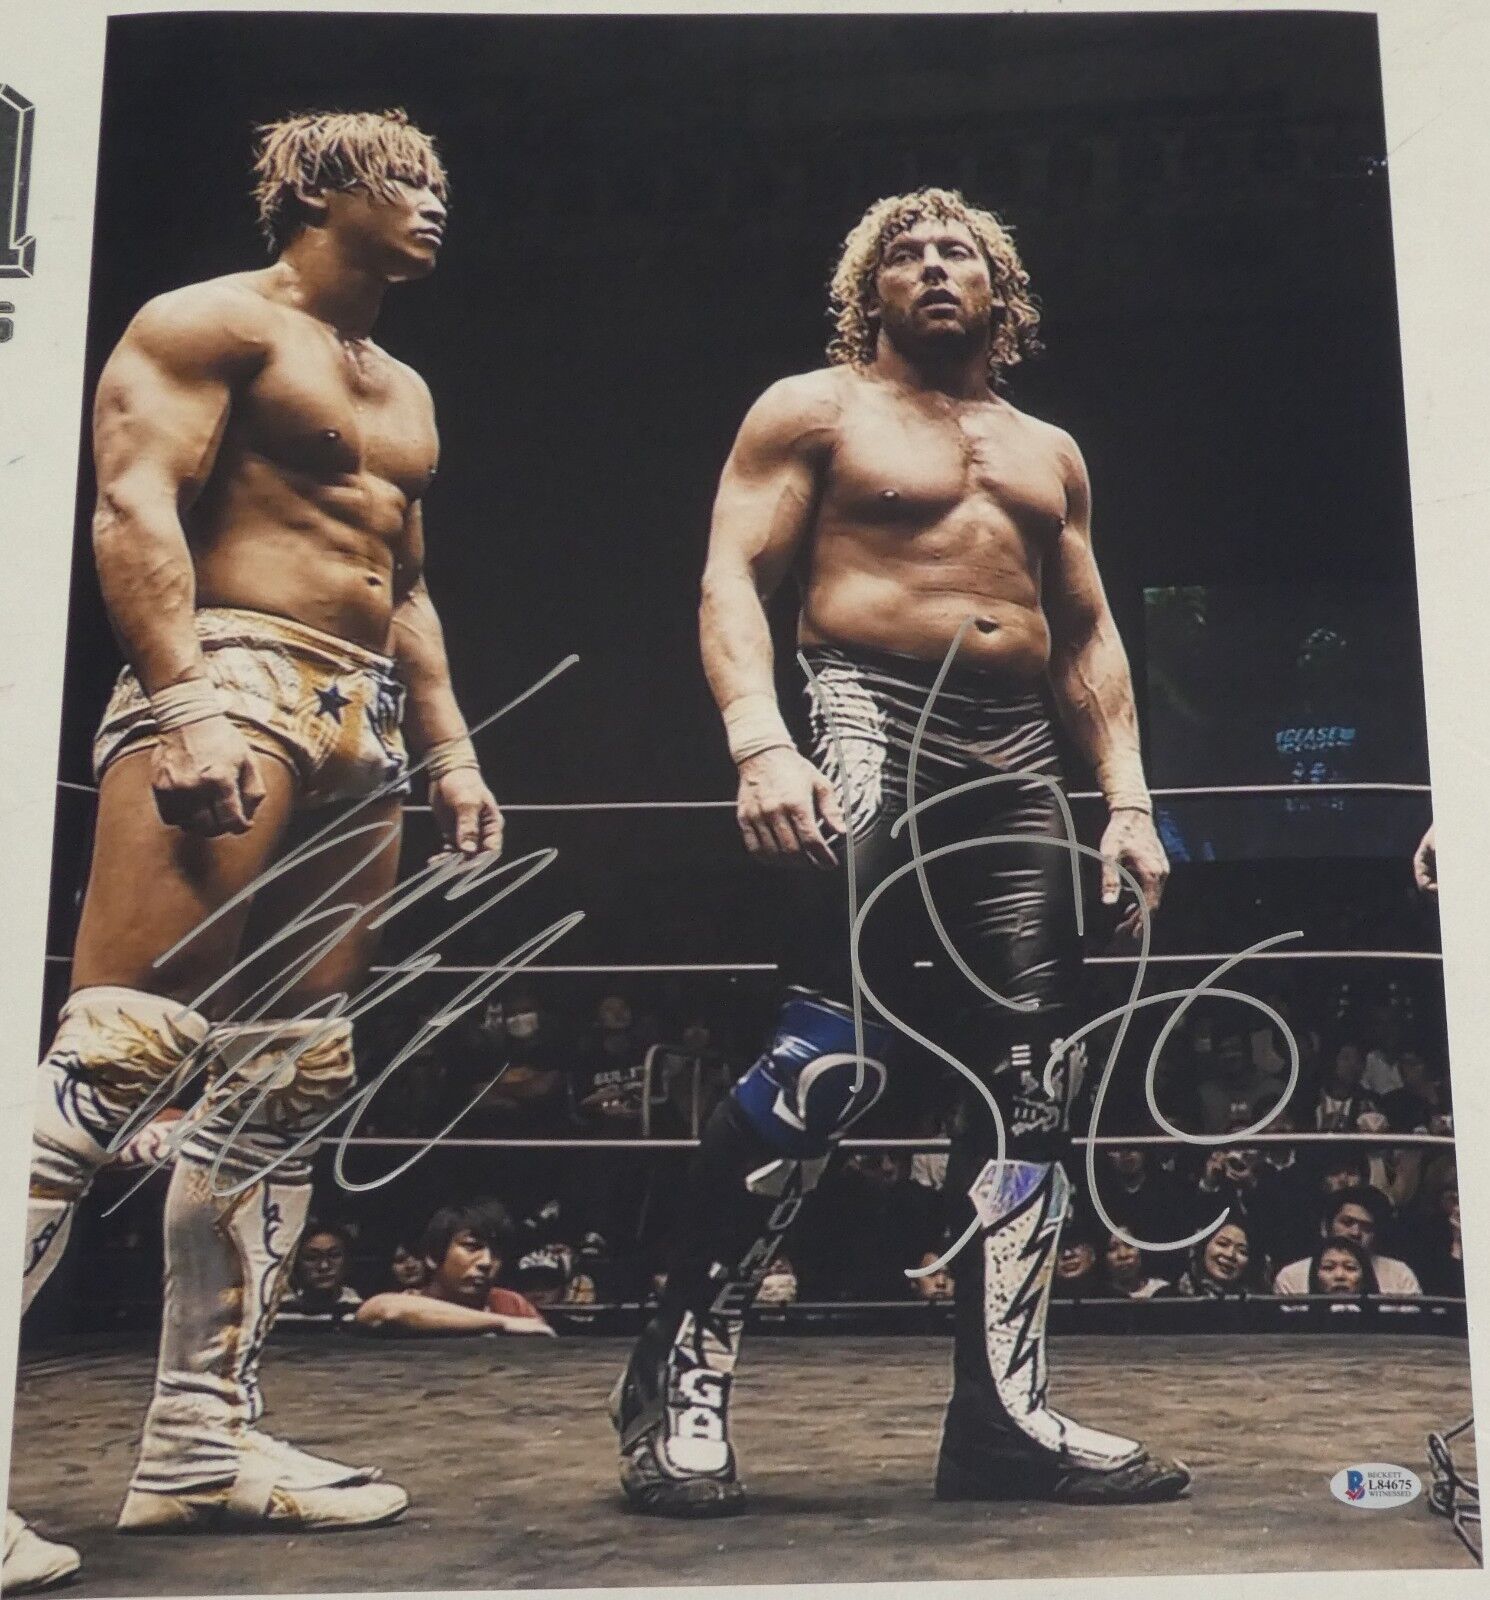 Kenny Omega Kota Ibushi Signed 16x20 Photo Poster painting BAS COA New Japan Pro Wrestling WWE 3